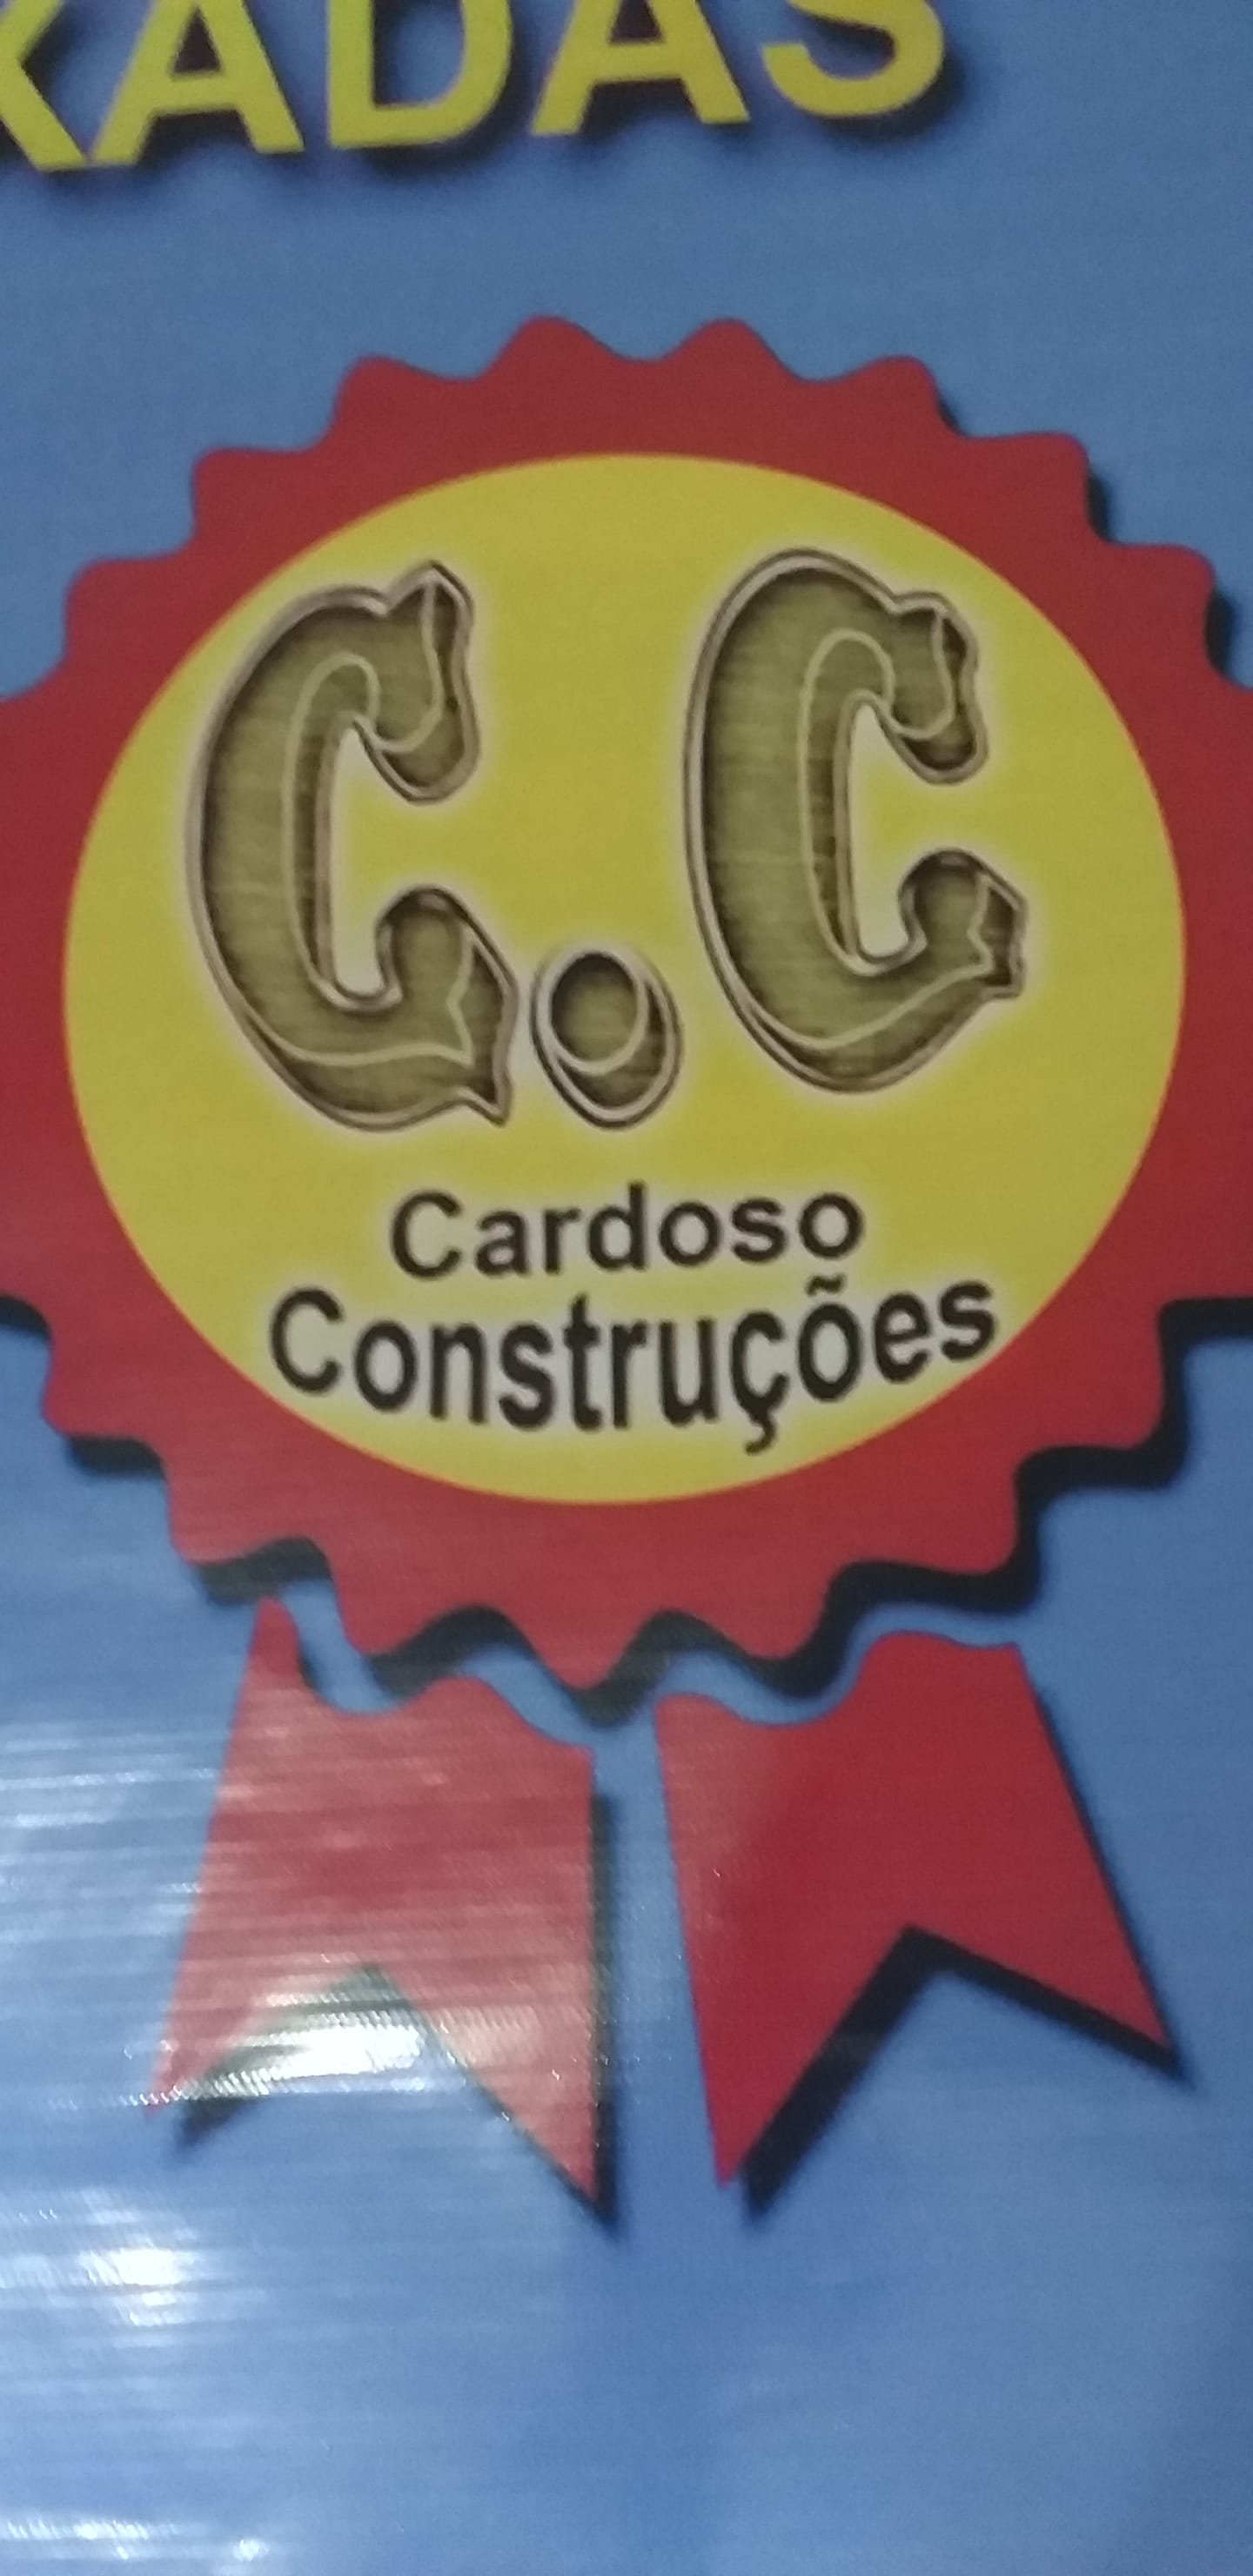 Cardoso Construções